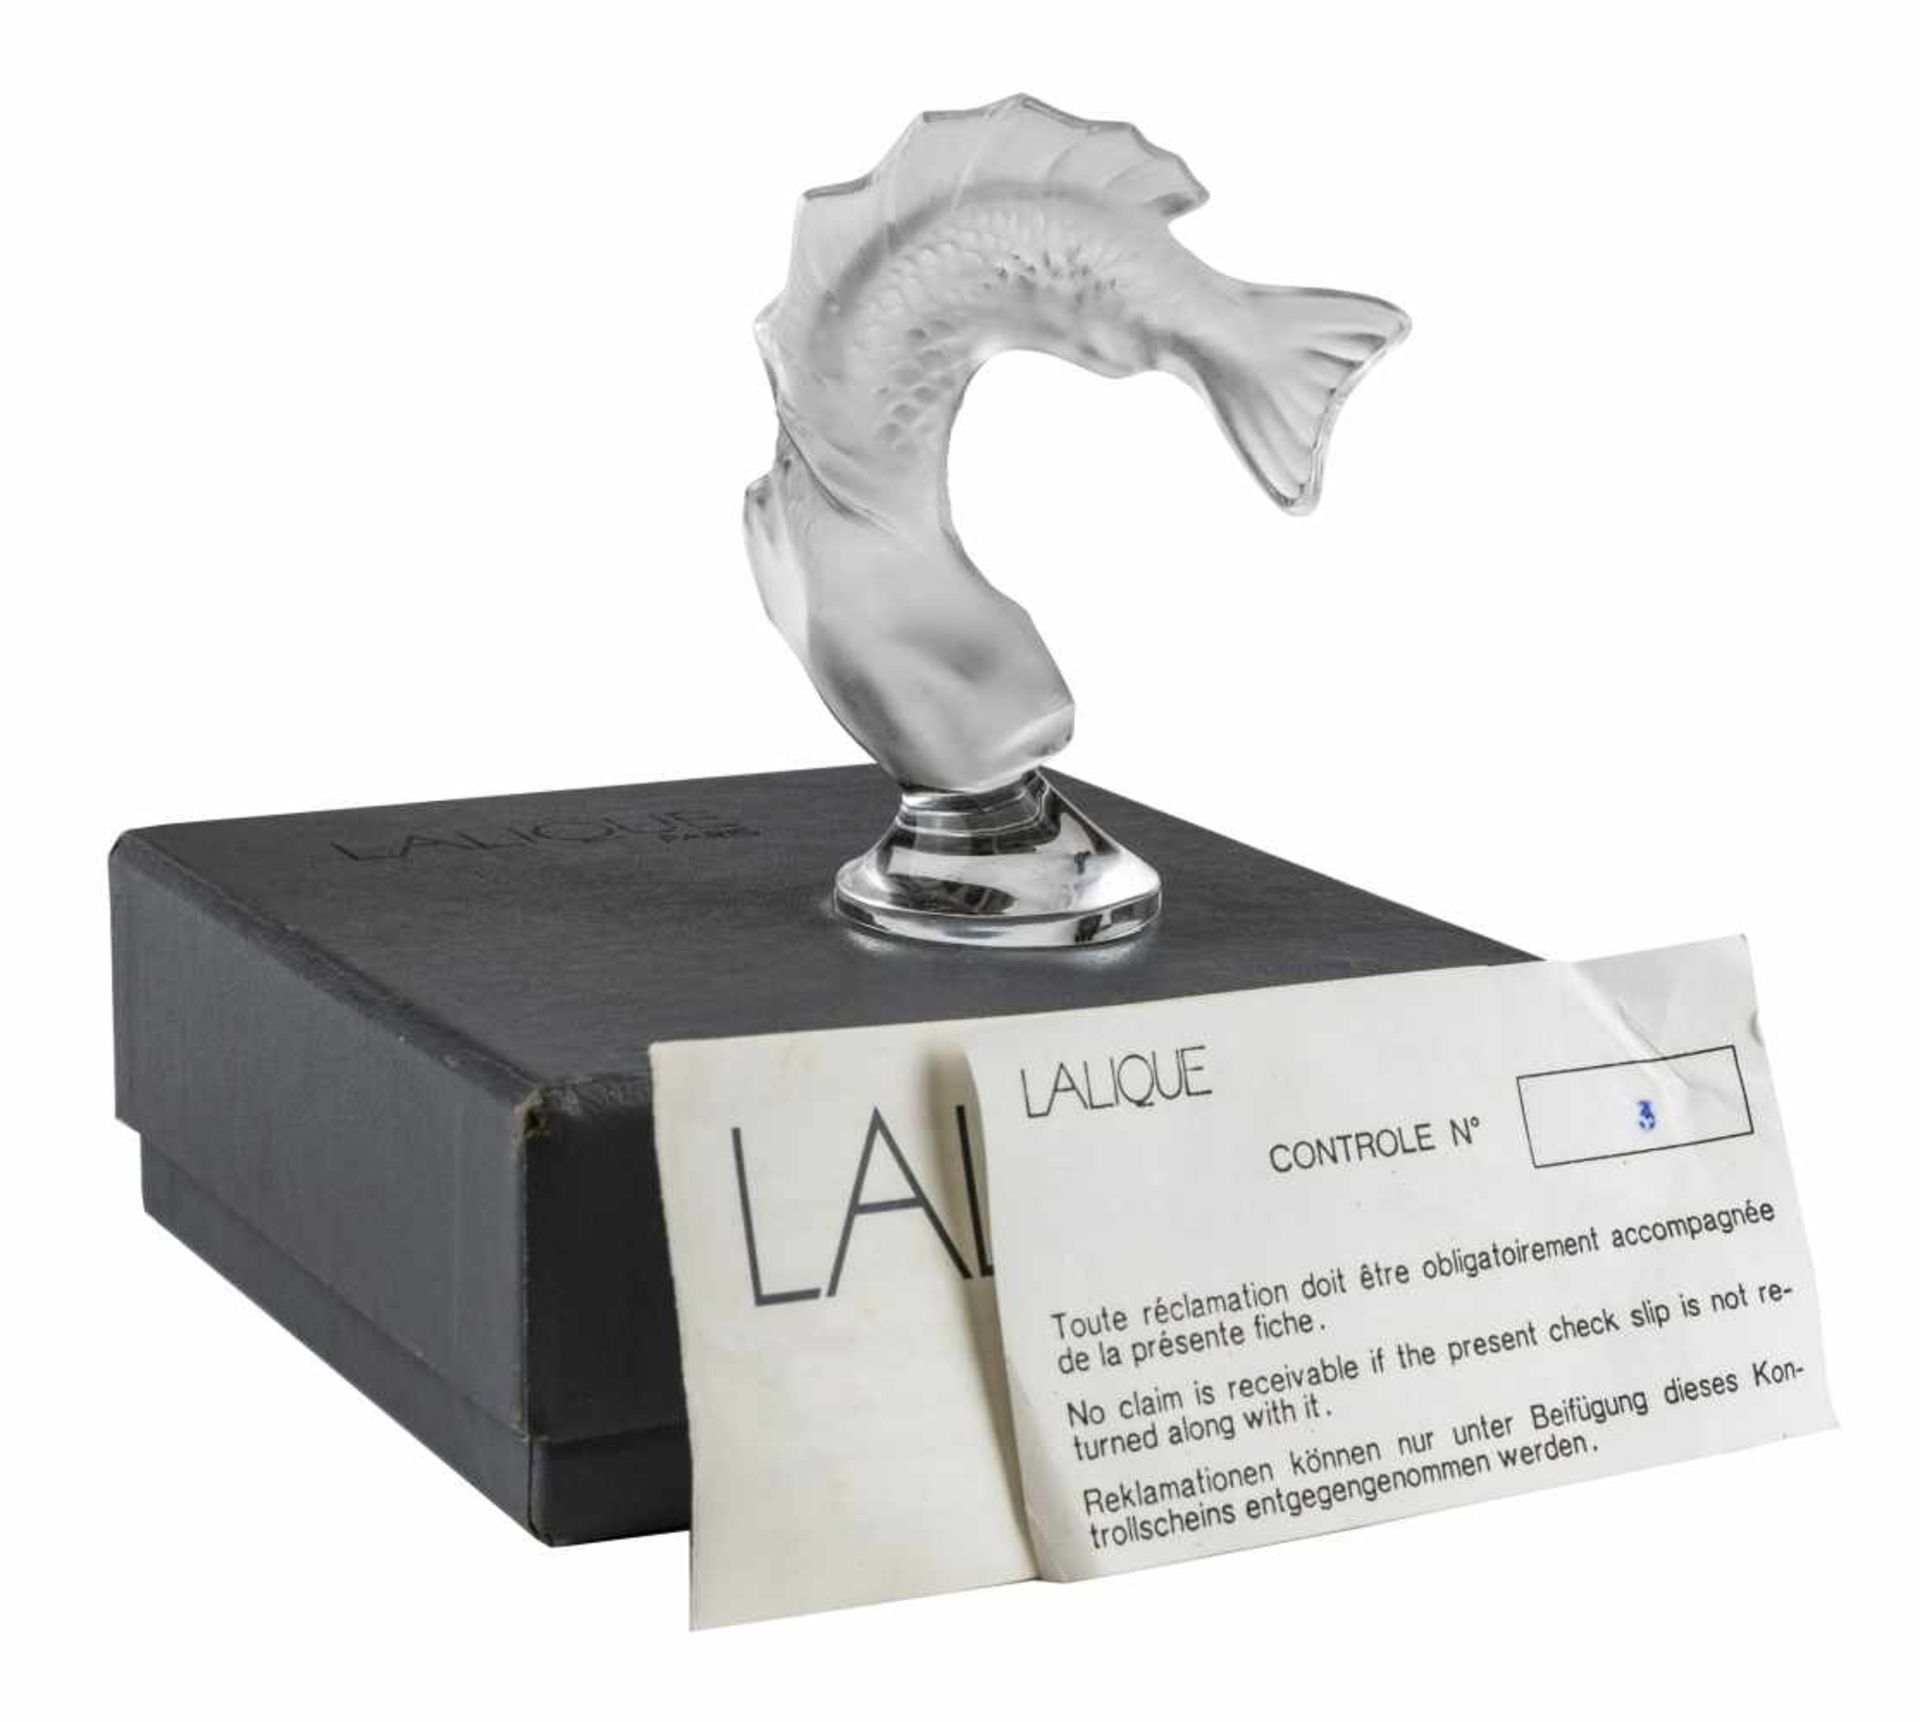 LALIQUE, ParisSculpture de poisson en verre moulé-pressé, signé "Lalique Cristal France" à